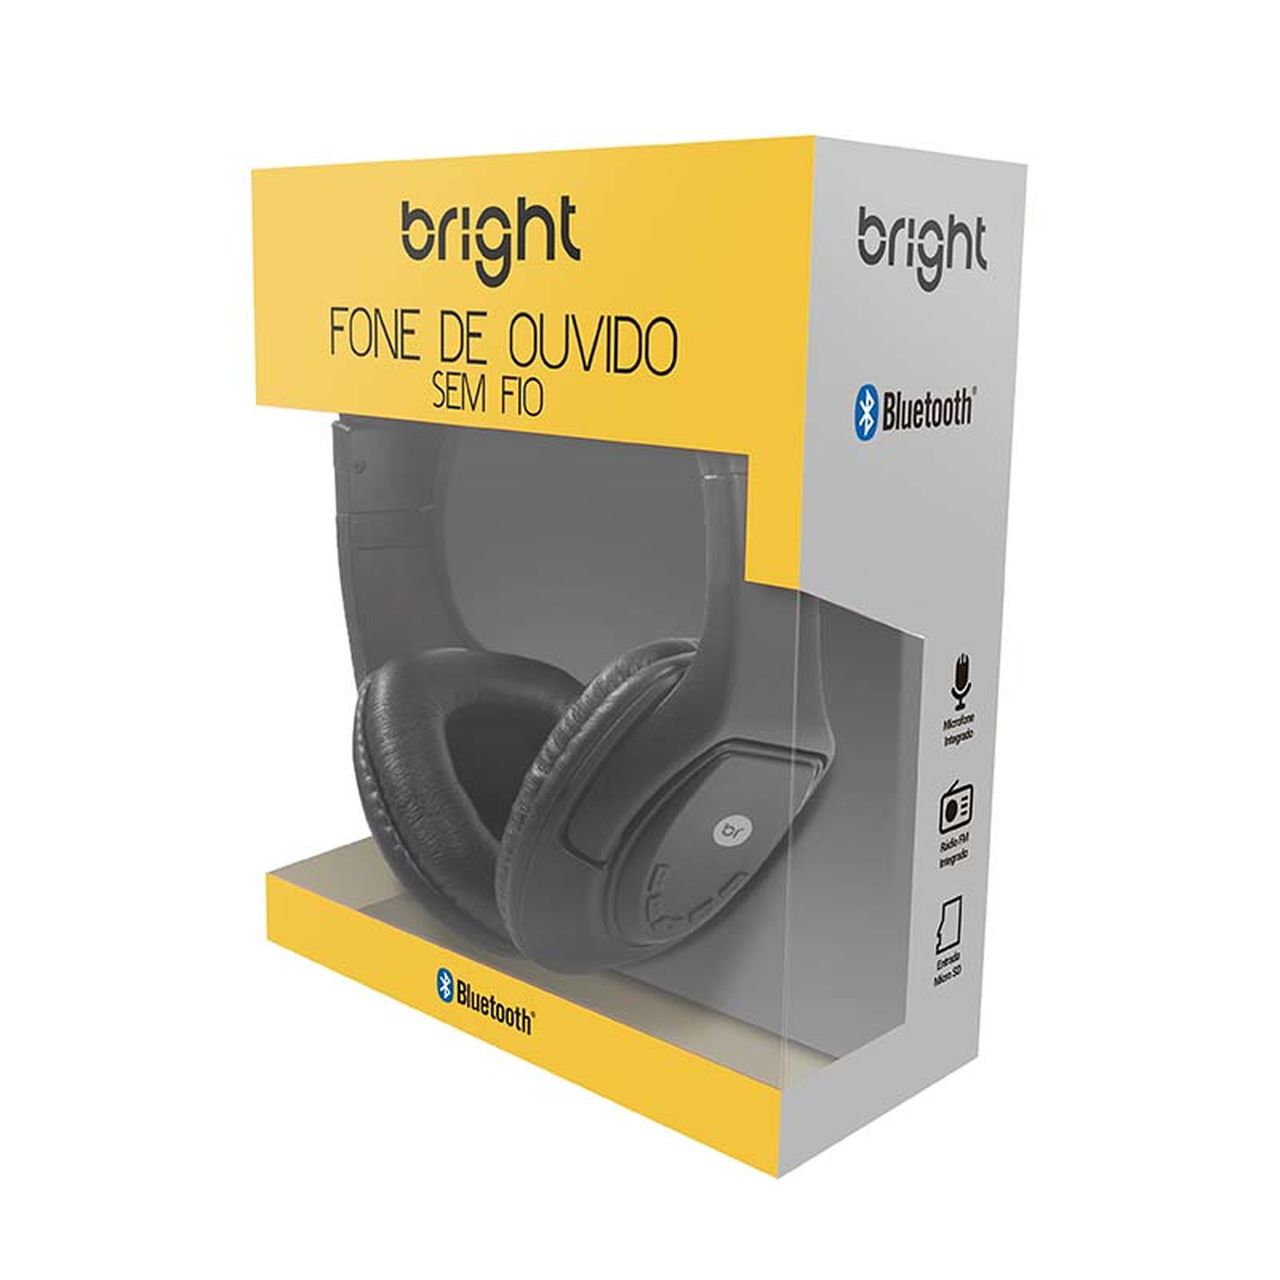 Fone de Ouvido Headphone Sem Fio Bluetooth entrada p/ cartão de memório + radio FM + microfone, 376 - Bright  - BRIGHT